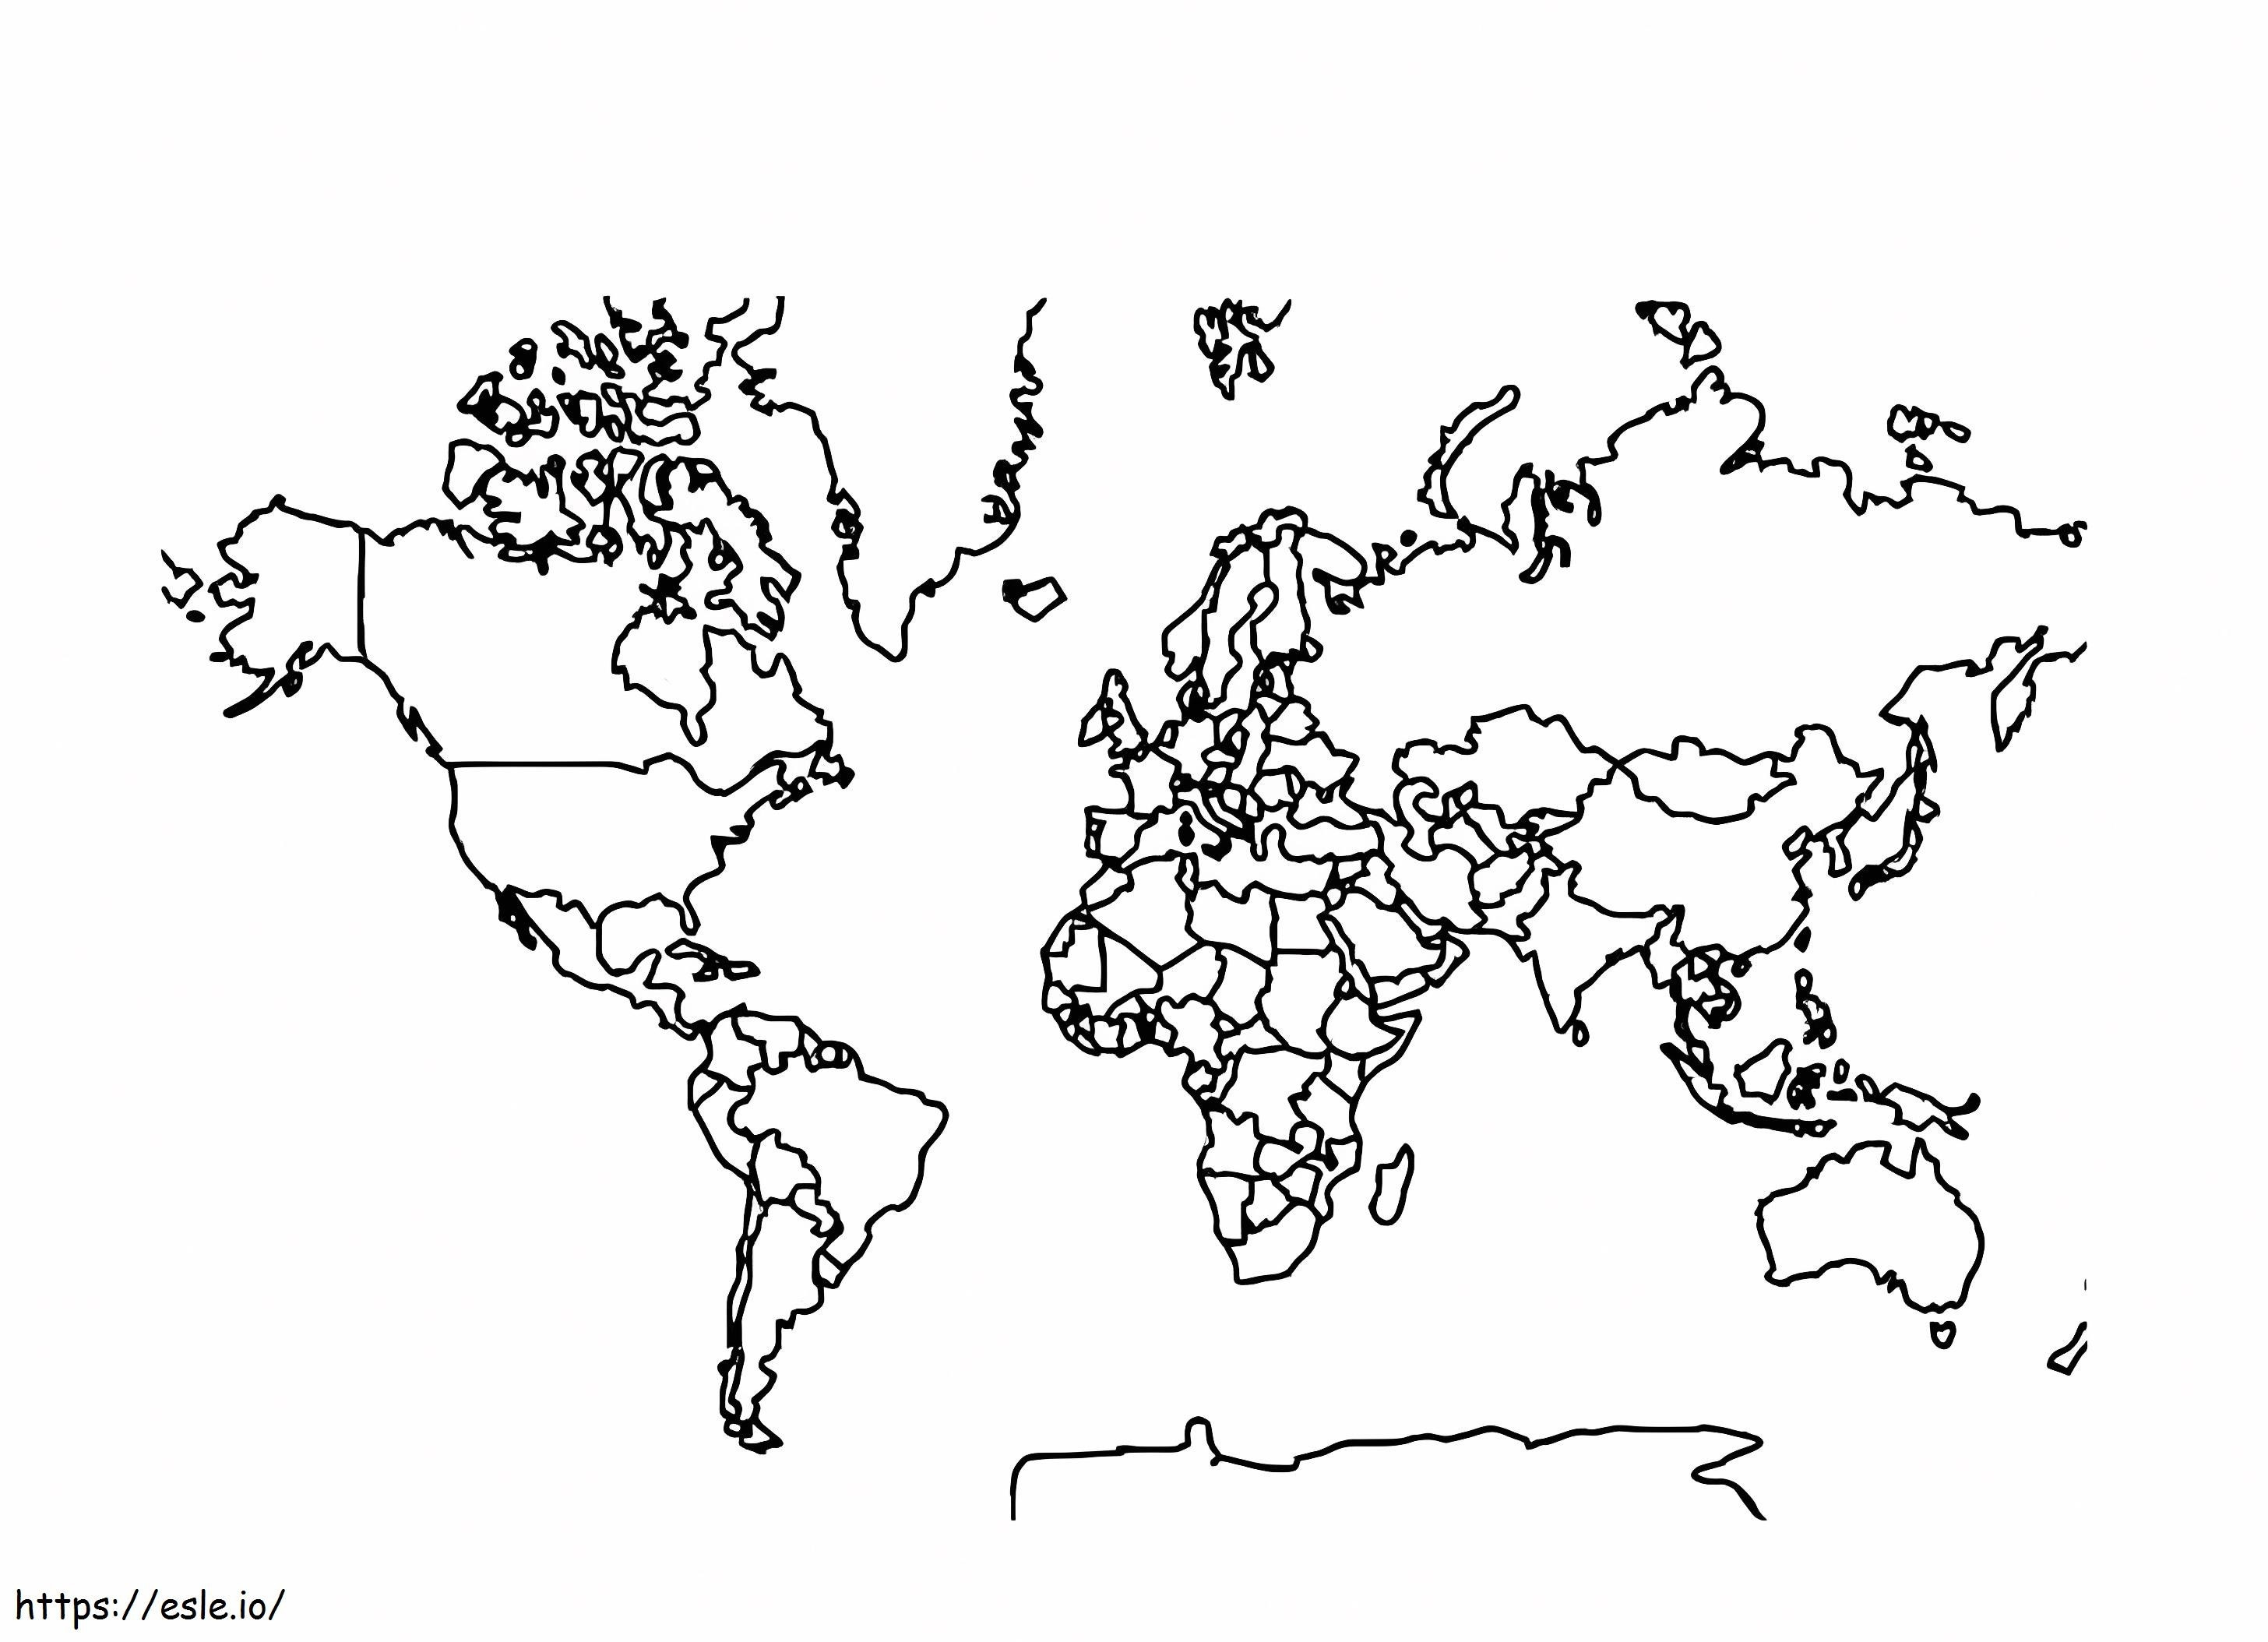 Dünya Haritasının Anahatlarını Renkli boyama